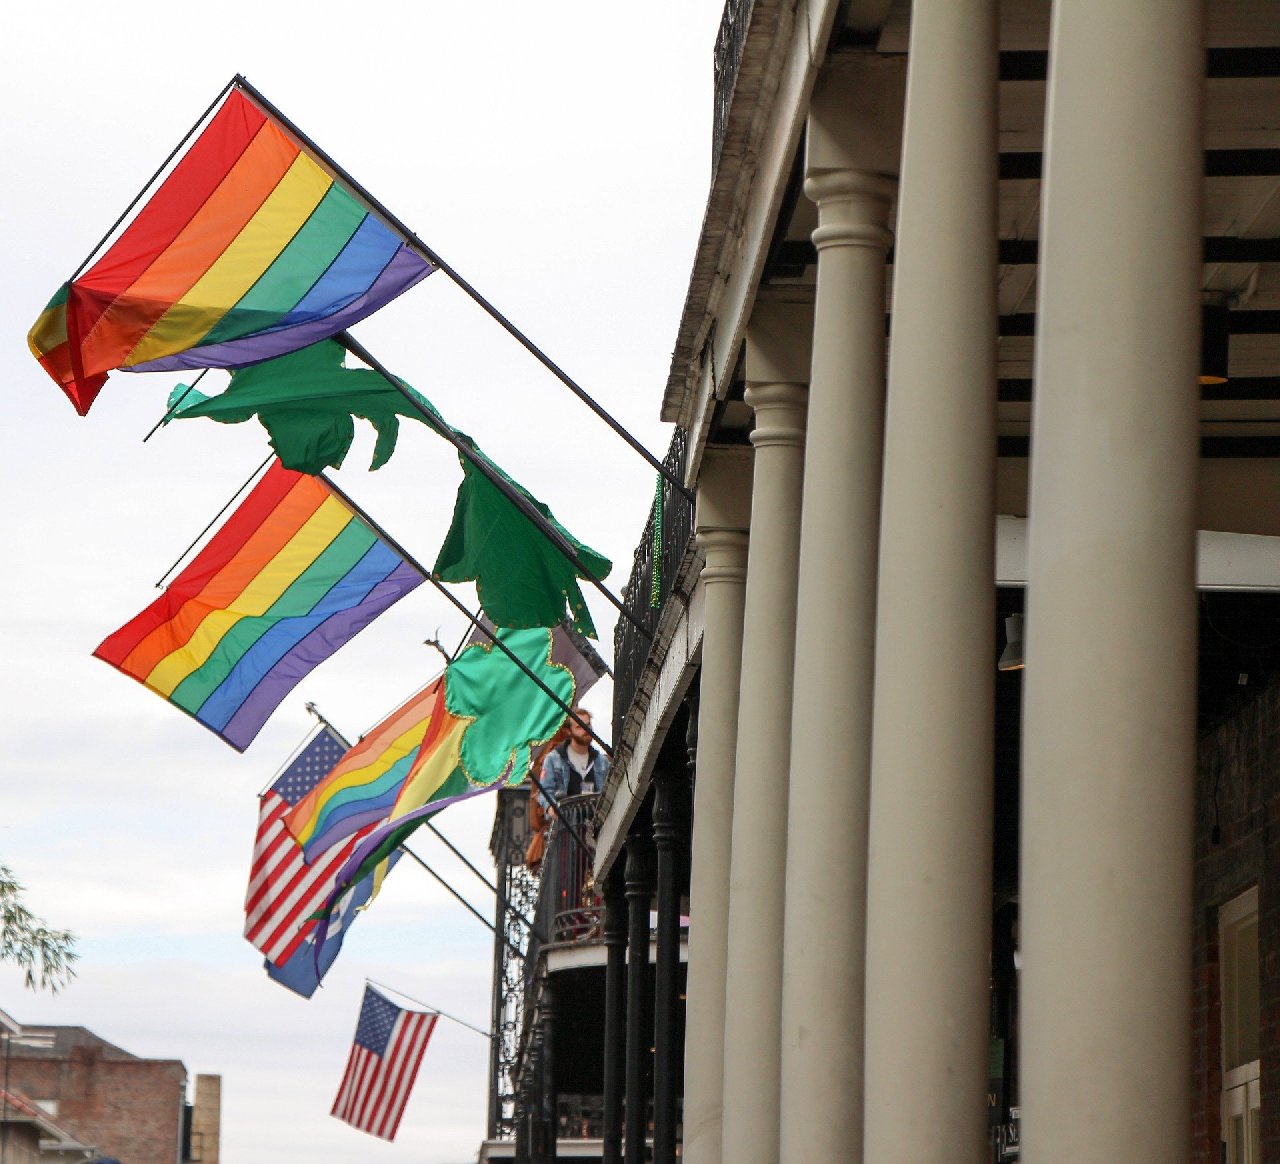 18 milyon ABD'li kendisini LGBTQ birey olarak tanımlıyor